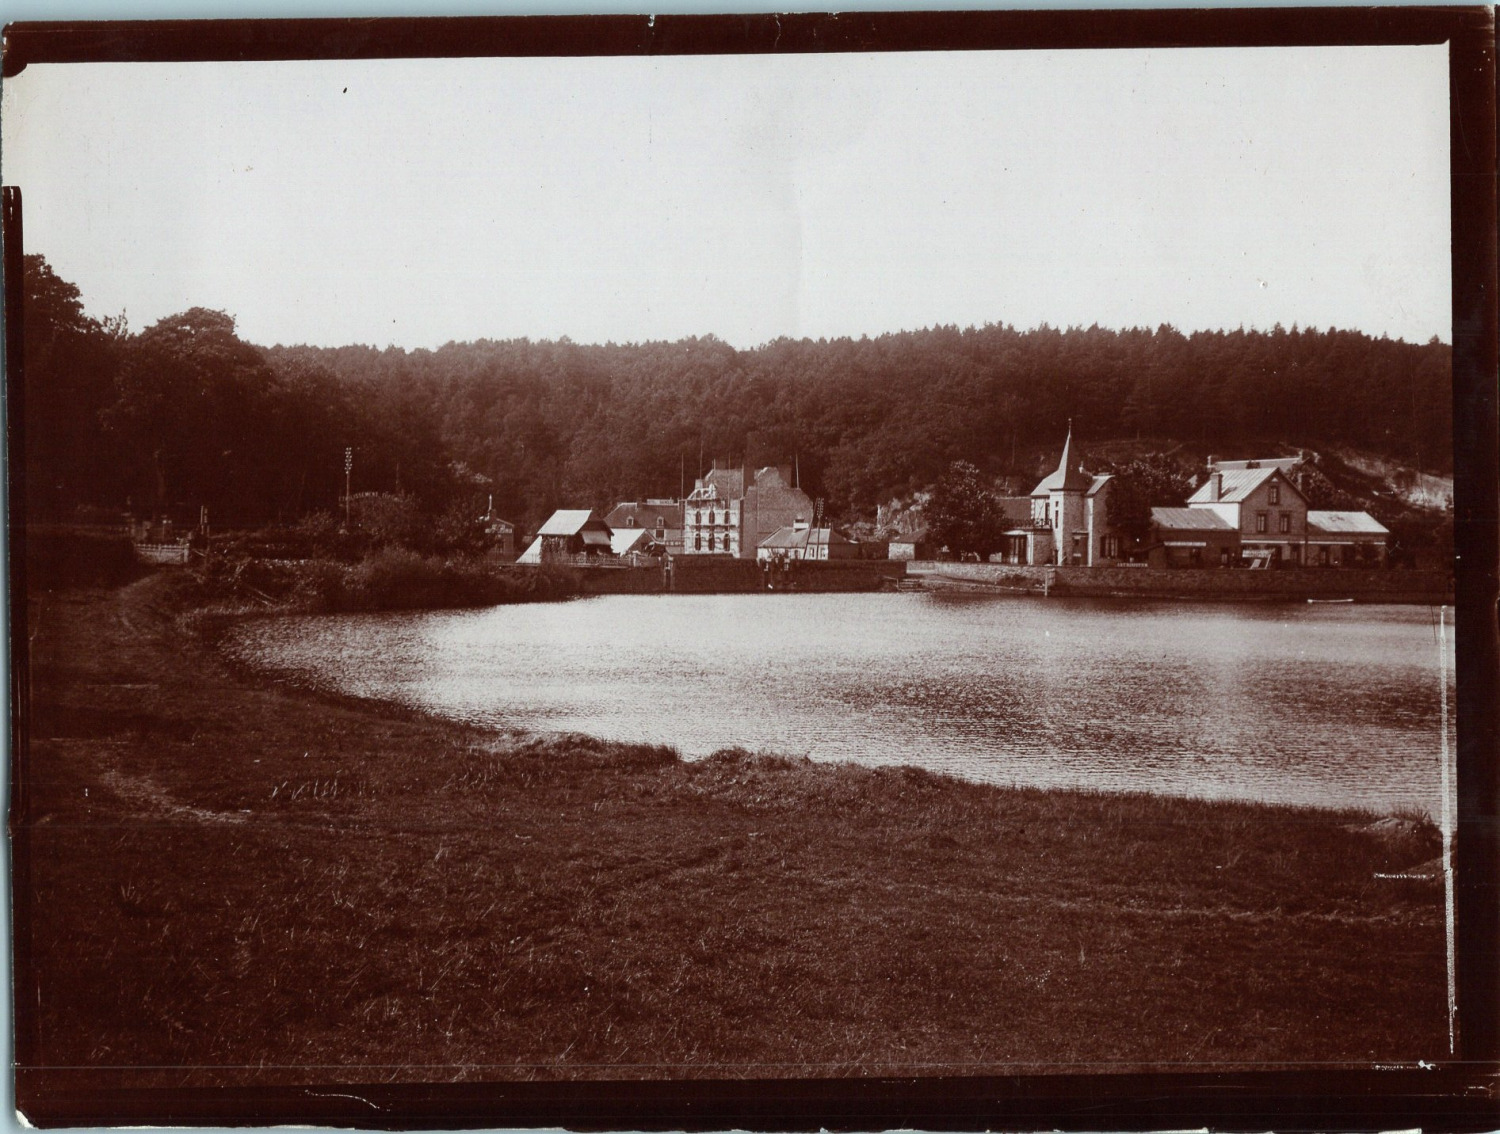 France, Bagnoles-de-l'Orne, Lake View, Vintage Print, circa 1905 Print vi